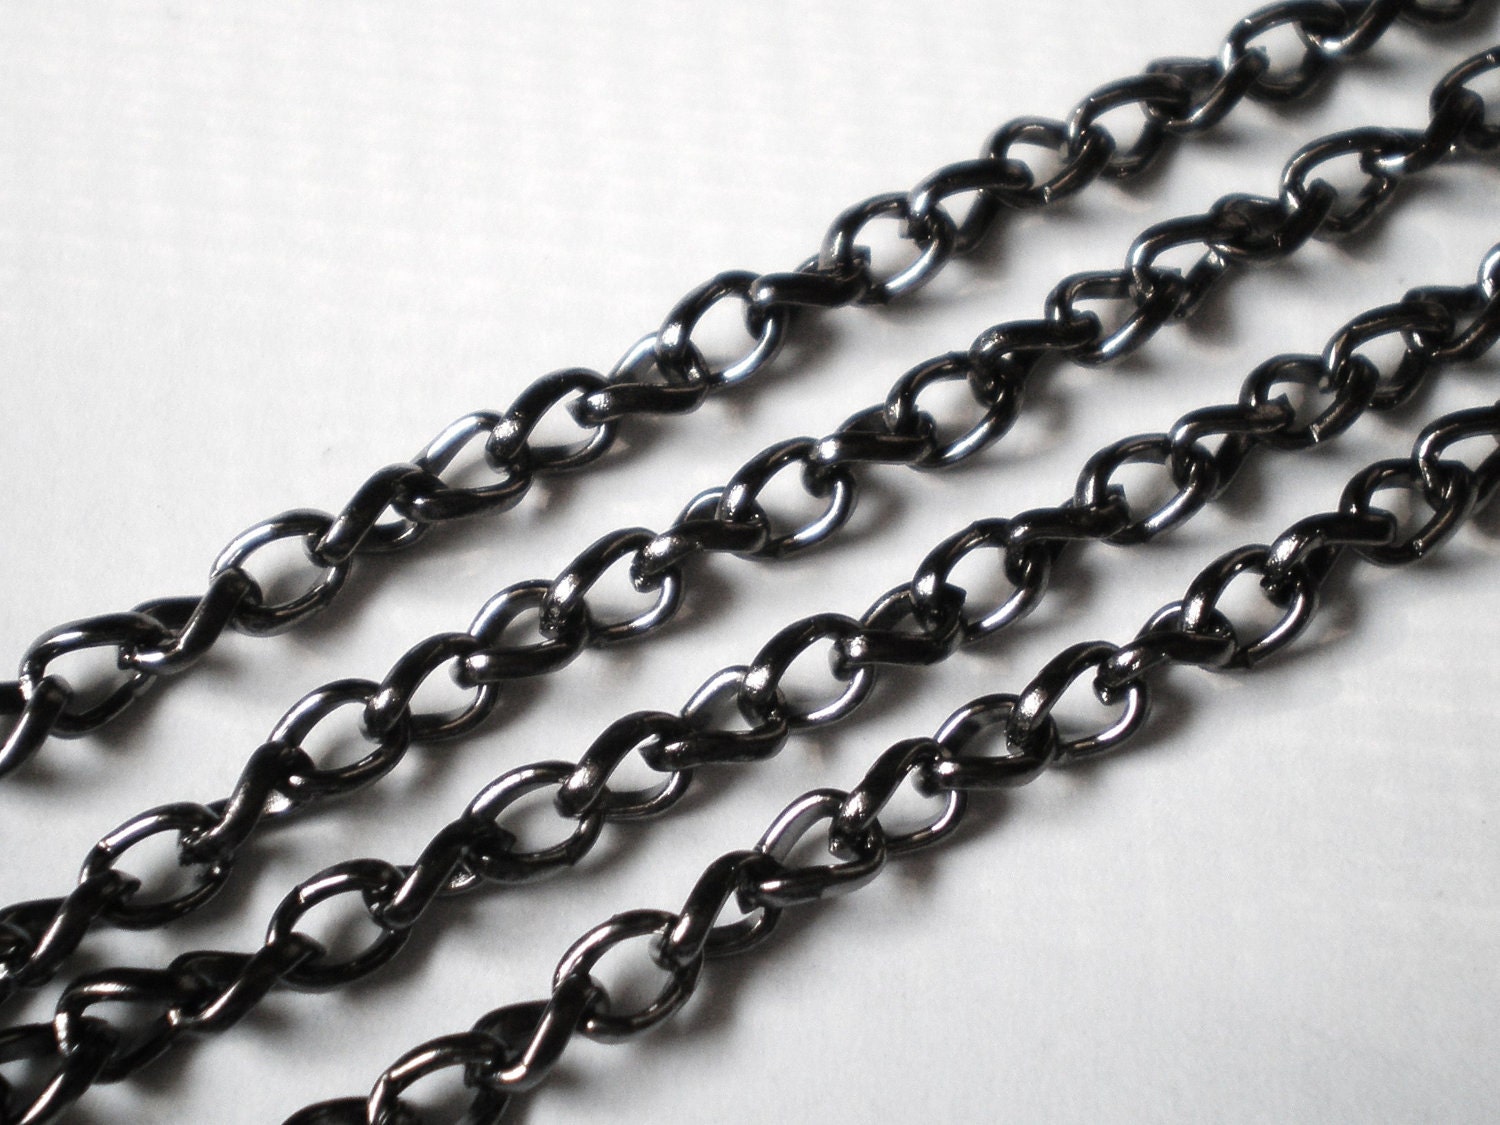 illumicrate chain of iron